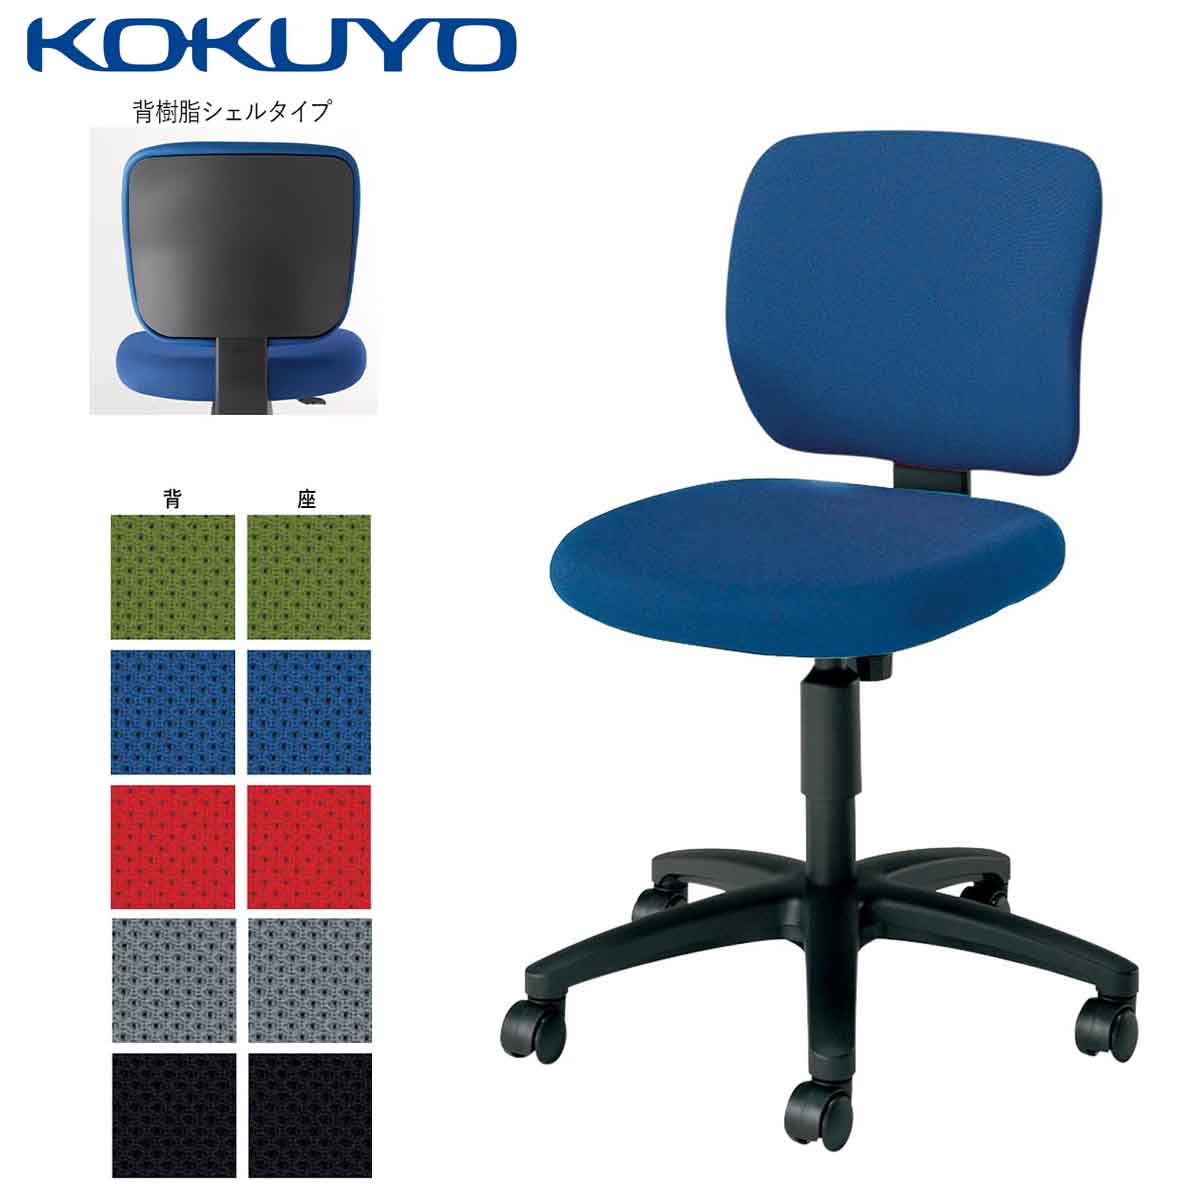 コクヨ デスクチェア オフィスチェア 椅子 EAZA イーザ CR-G180F6 背樹脂シェルタイプ 肘なし -v フローリング用キャスター |  コクヨオンラインストア楽天市場店